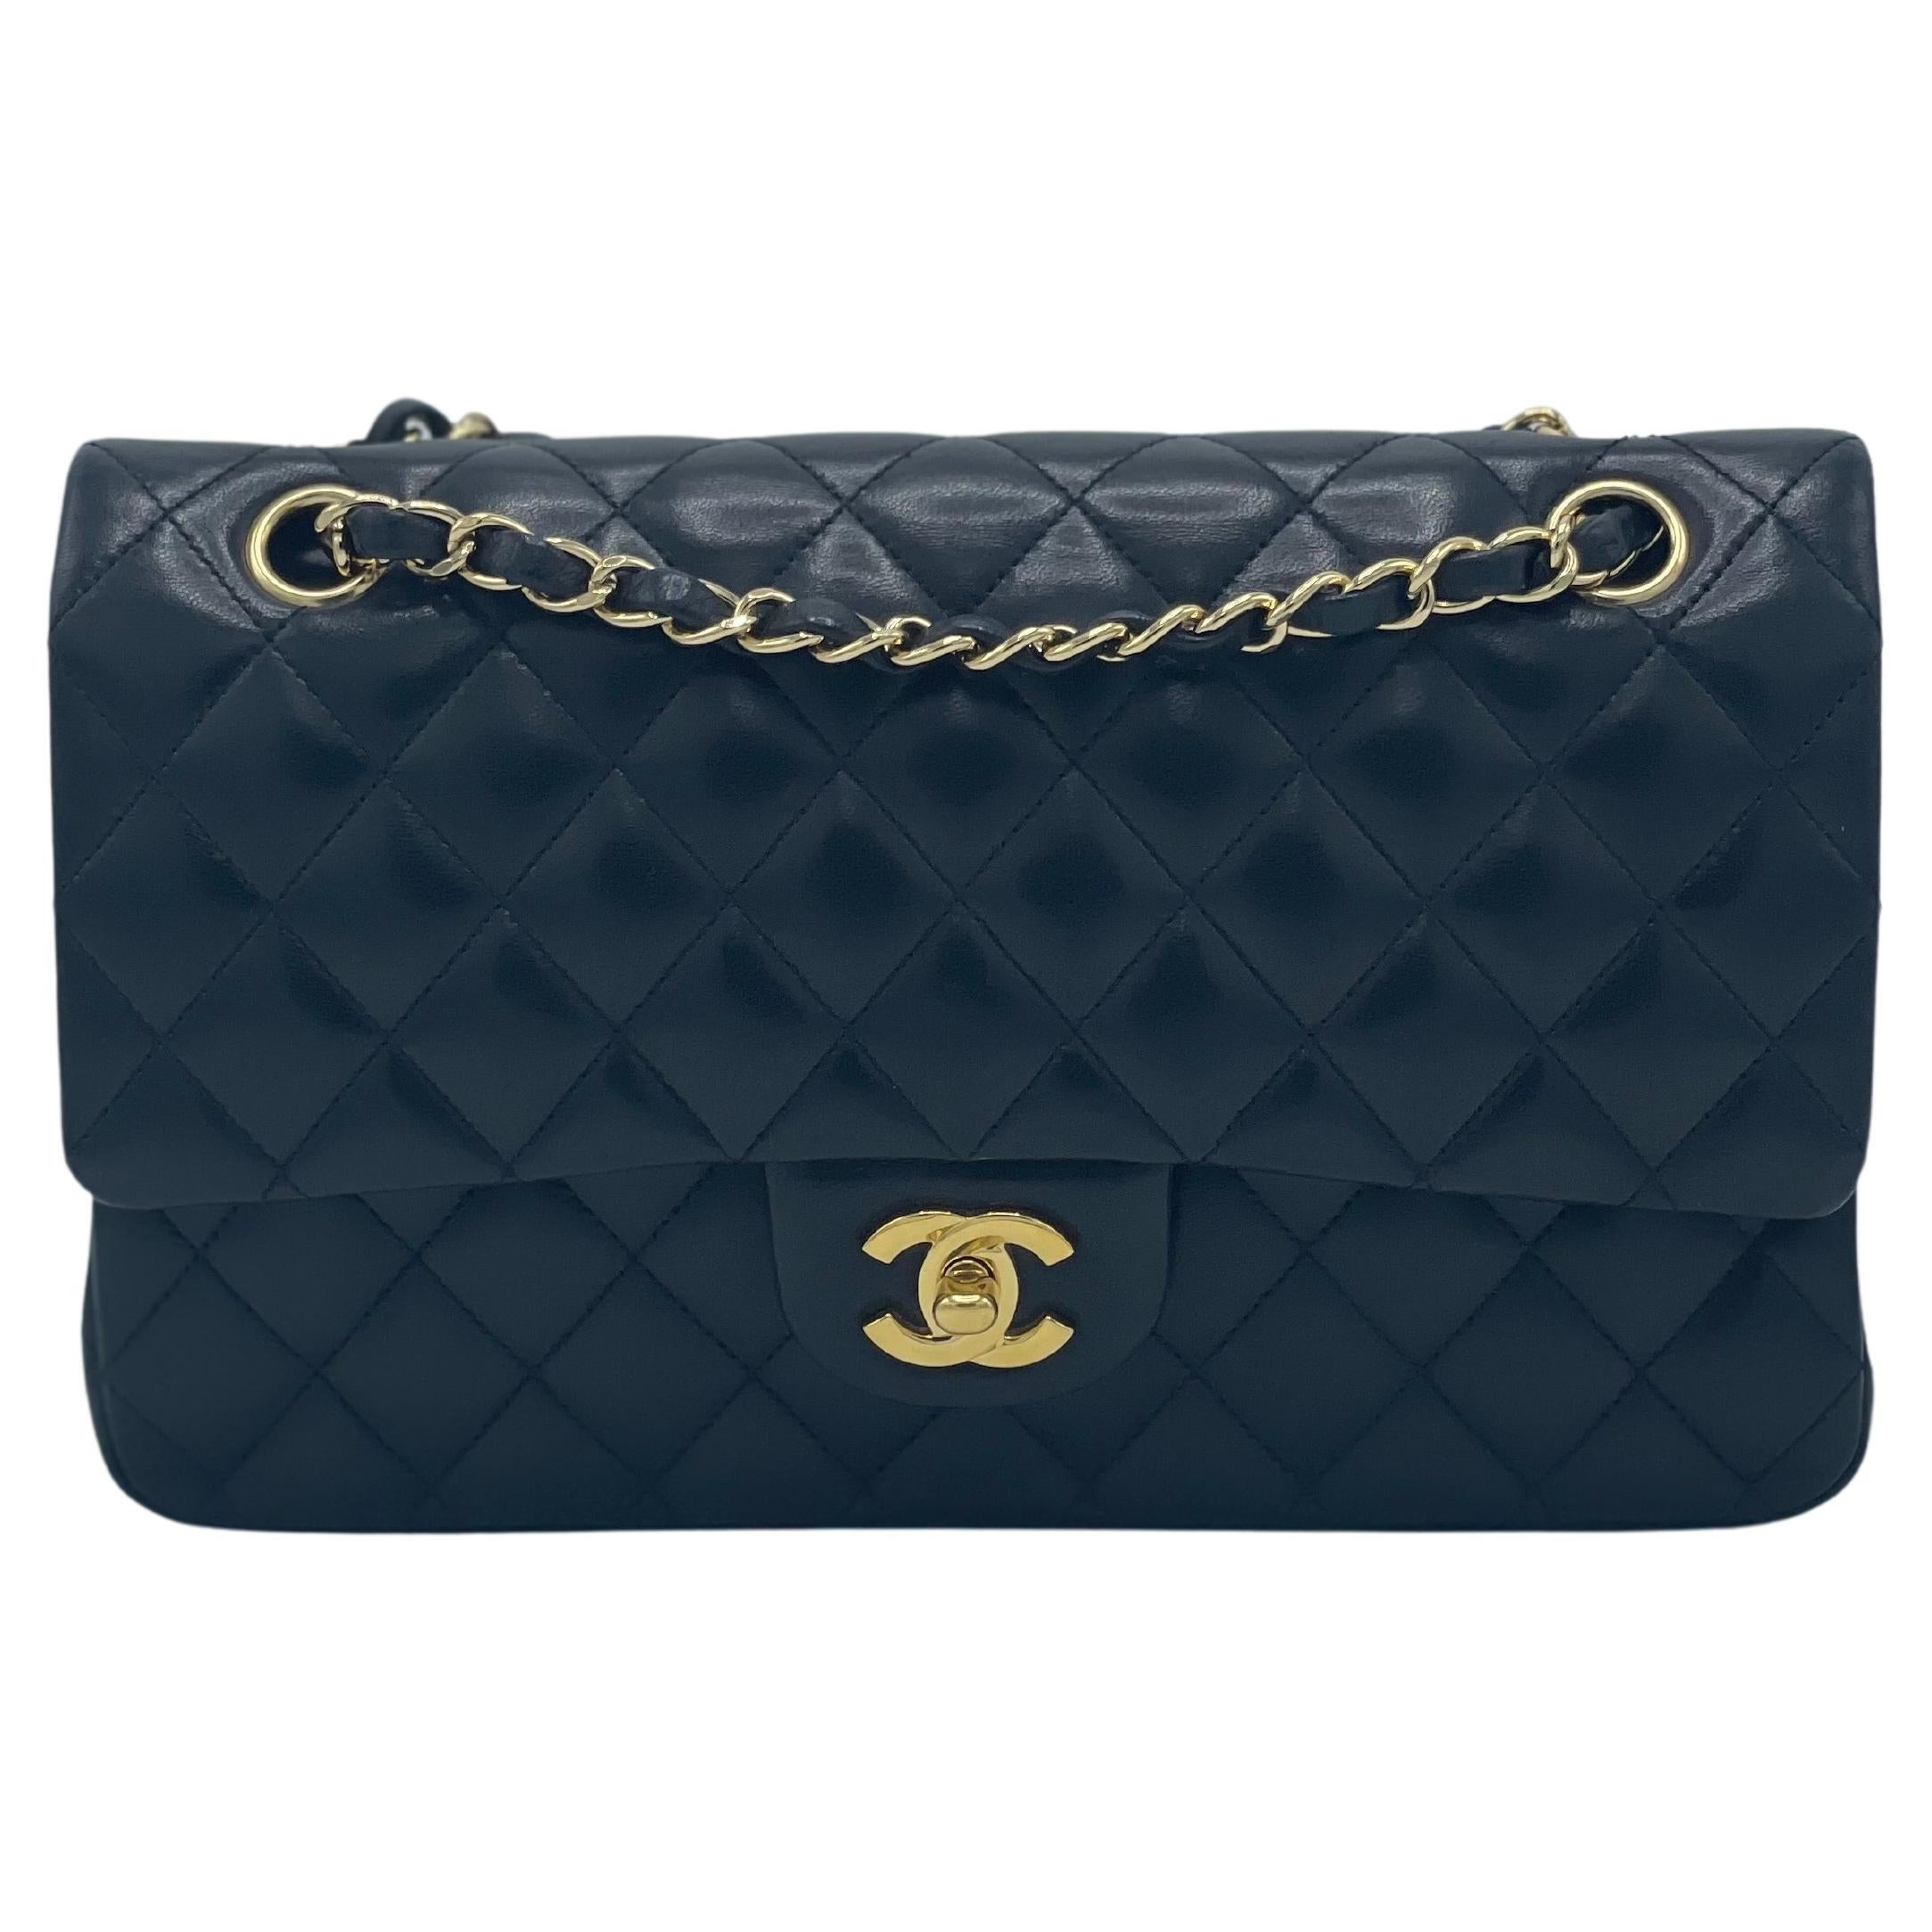 Das berühmte neue Modell der Chanel Classic Double Flap Umhängetasche ist aus schwarzem, diamantgestepptem Lammleder gefertigt und mit goldfarbenen Drehverschlüssen und Kettenbeschlägen verziert. 
Die Tasche hat einen Schulterriemen aus poliertem,